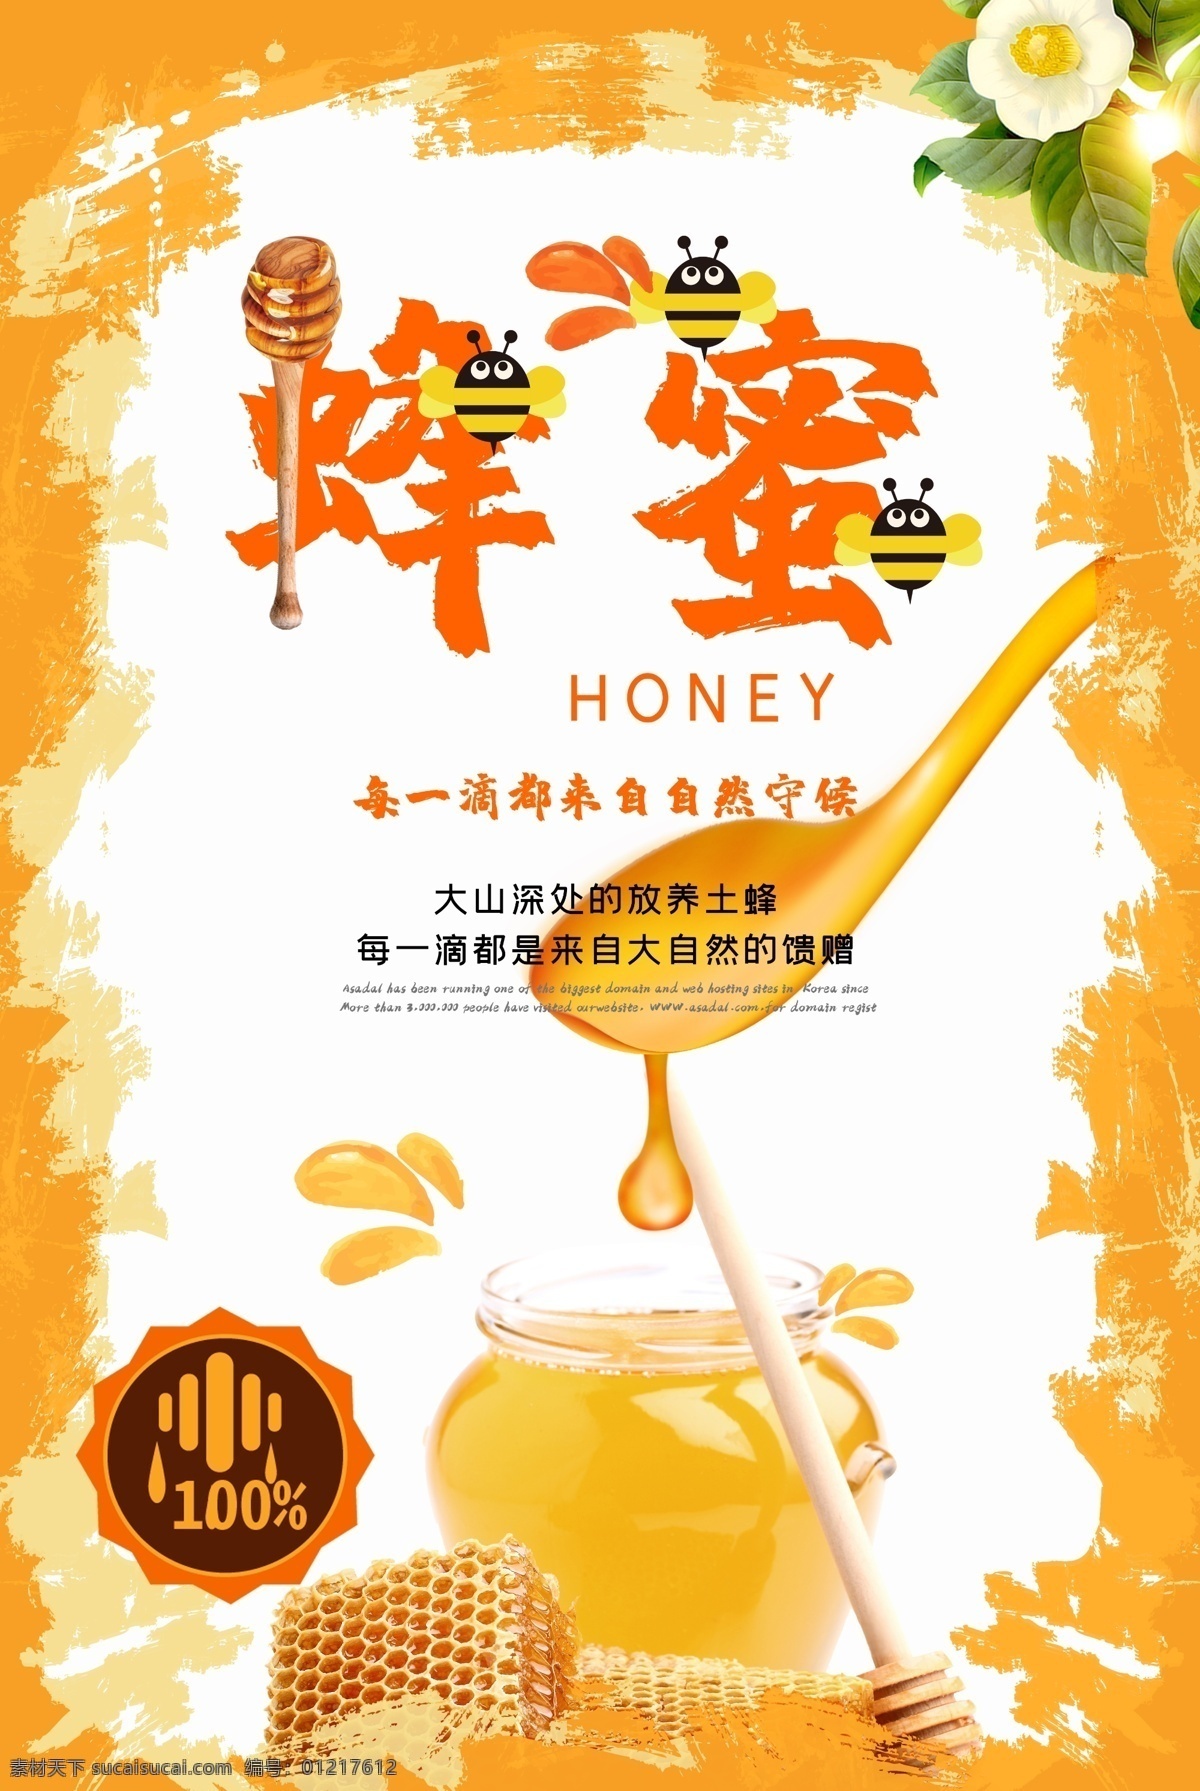 蜂蜜海报 蜂蜜 蜂蜜展板 蜂蜜广告 蜂蜜宣传 蜂蜜画册 蜂蜜模板 蜂蜜制作 蜂蜜工艺 蜂蜜包装 蜂蜜展架 蜂蜜人物 蜂蜜插画 蜂蜜卡通 蜂蜜文化 蜂蜜图片 蜂蜜养殖 蜂蜜设计 蜂蜜产品 蜂蜜礼品盒 蜂蜜外盒包装 蜂蜜挂画 蜂蜜素材 蜜蜂文化 蜜蜂养殖 蜂蜜灯箱